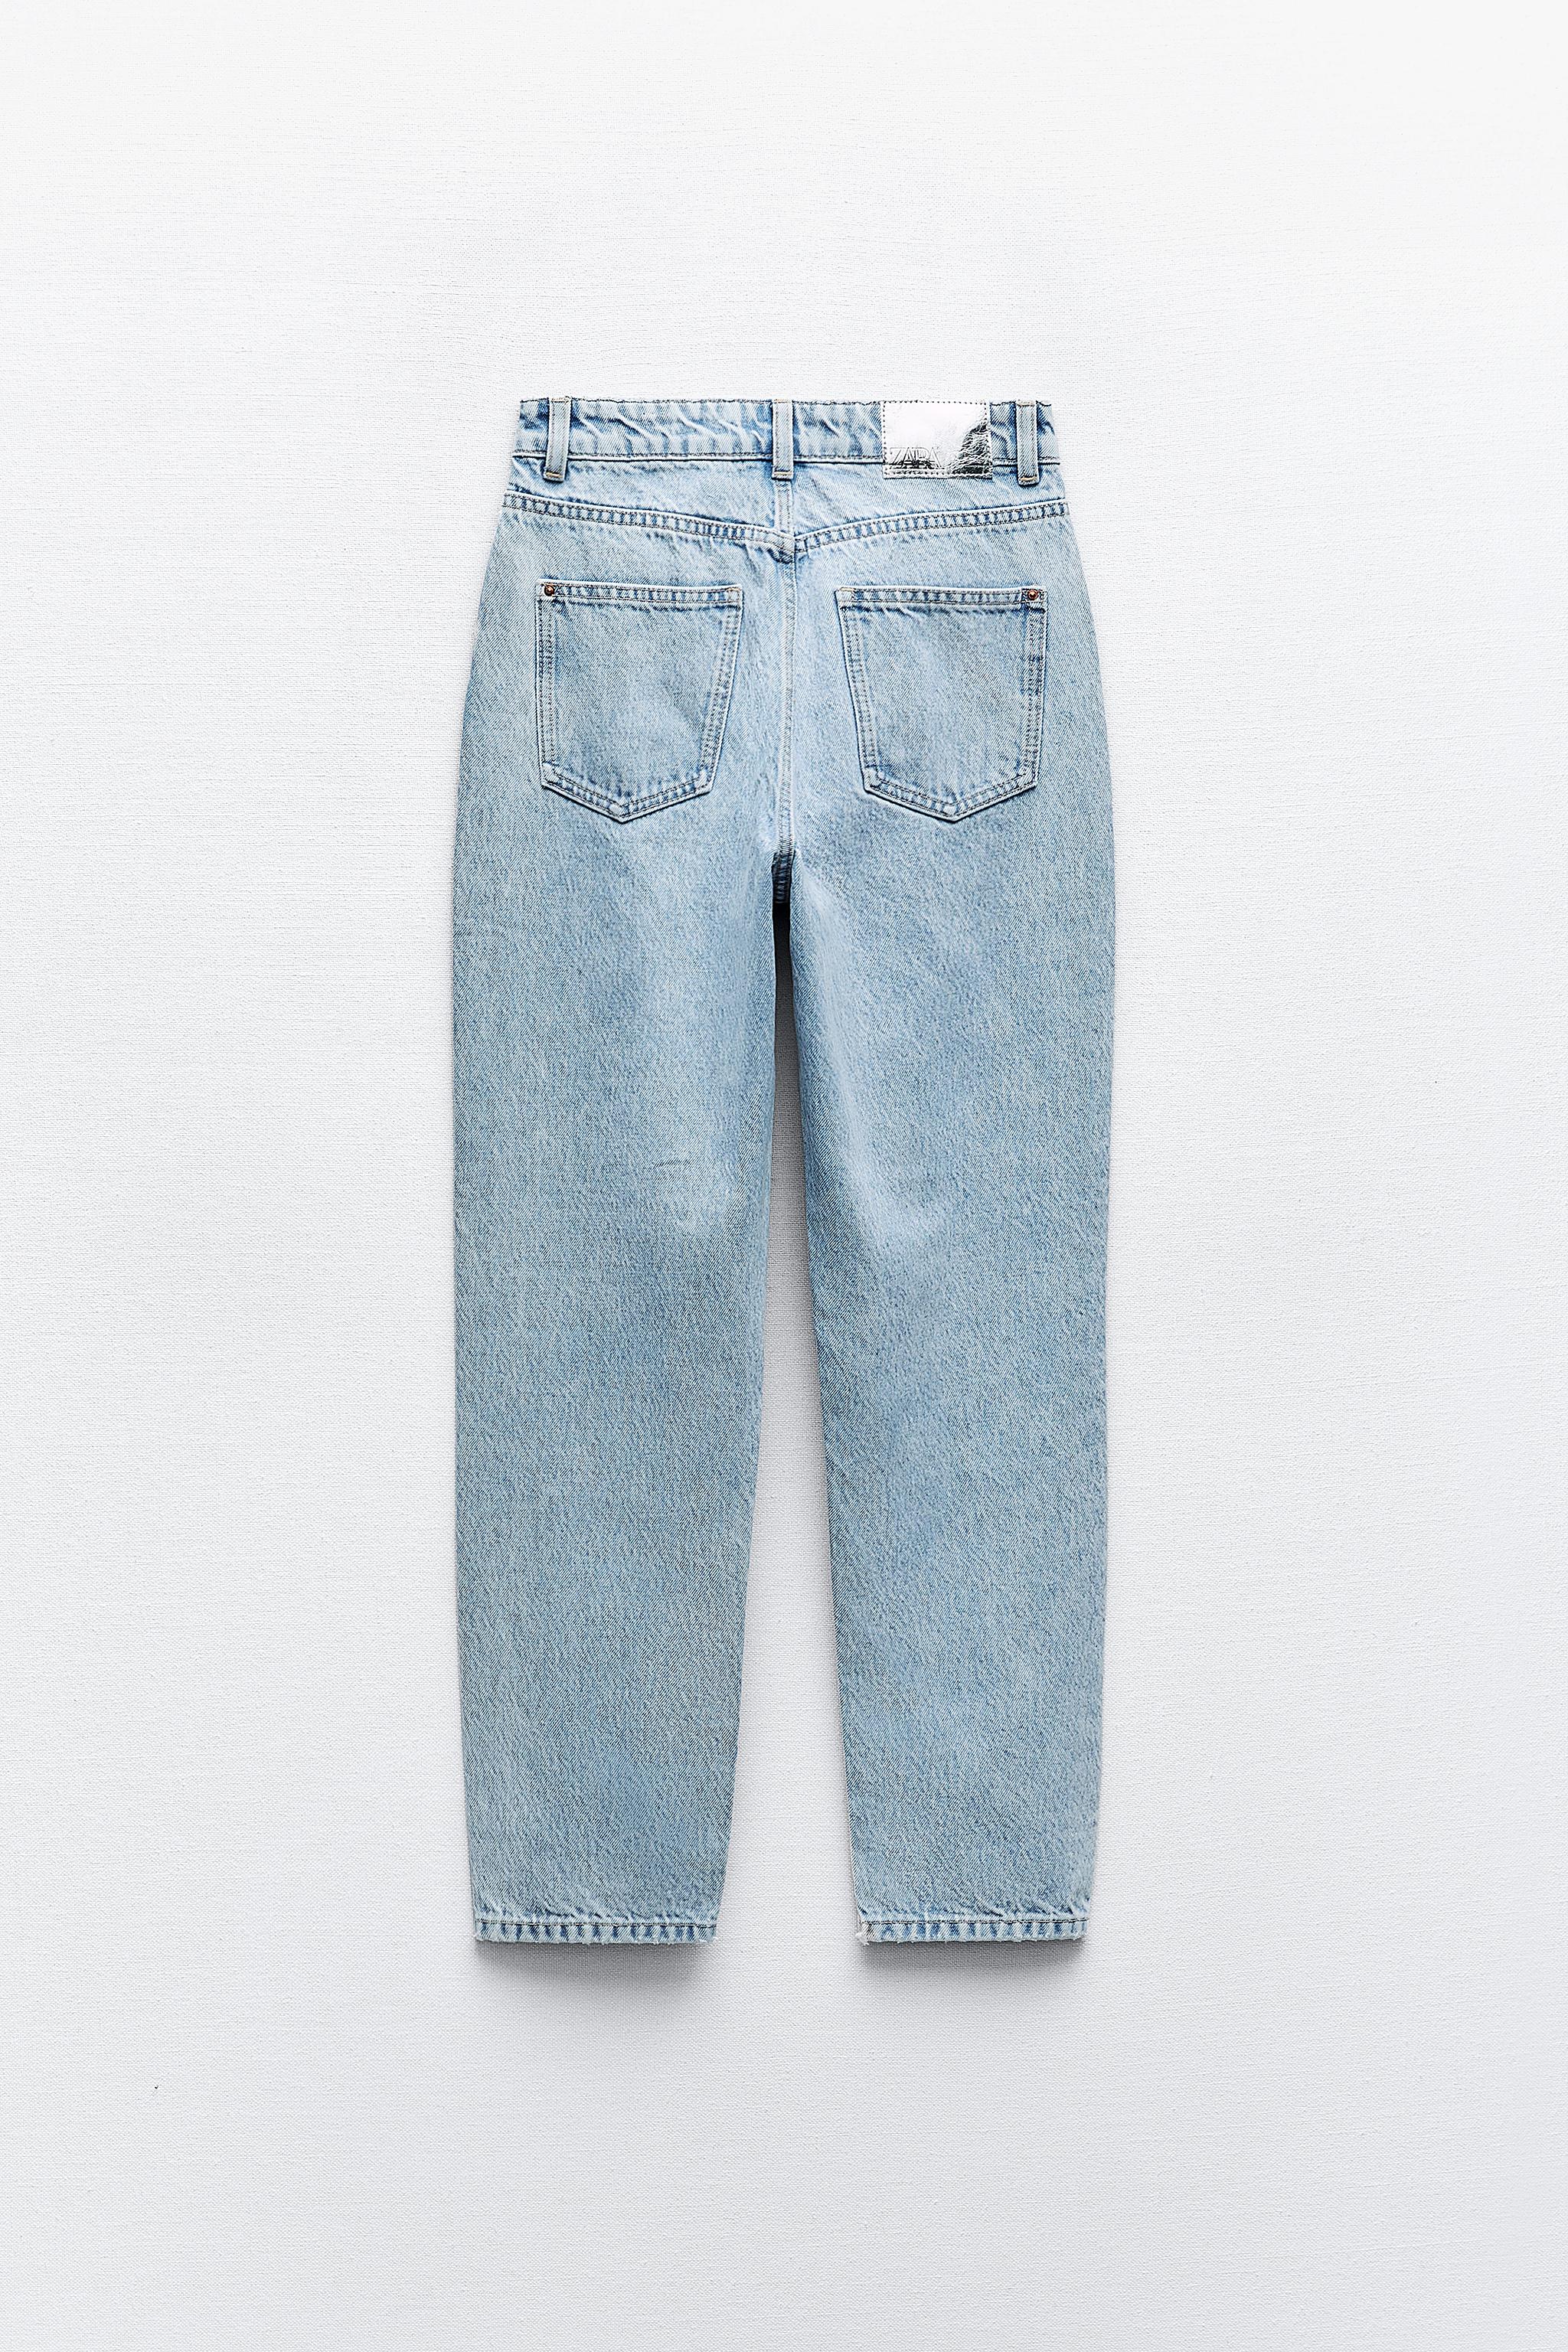 Z1975 高腰宽松舒适版型牛仔裤- 中蓝色| ZARA